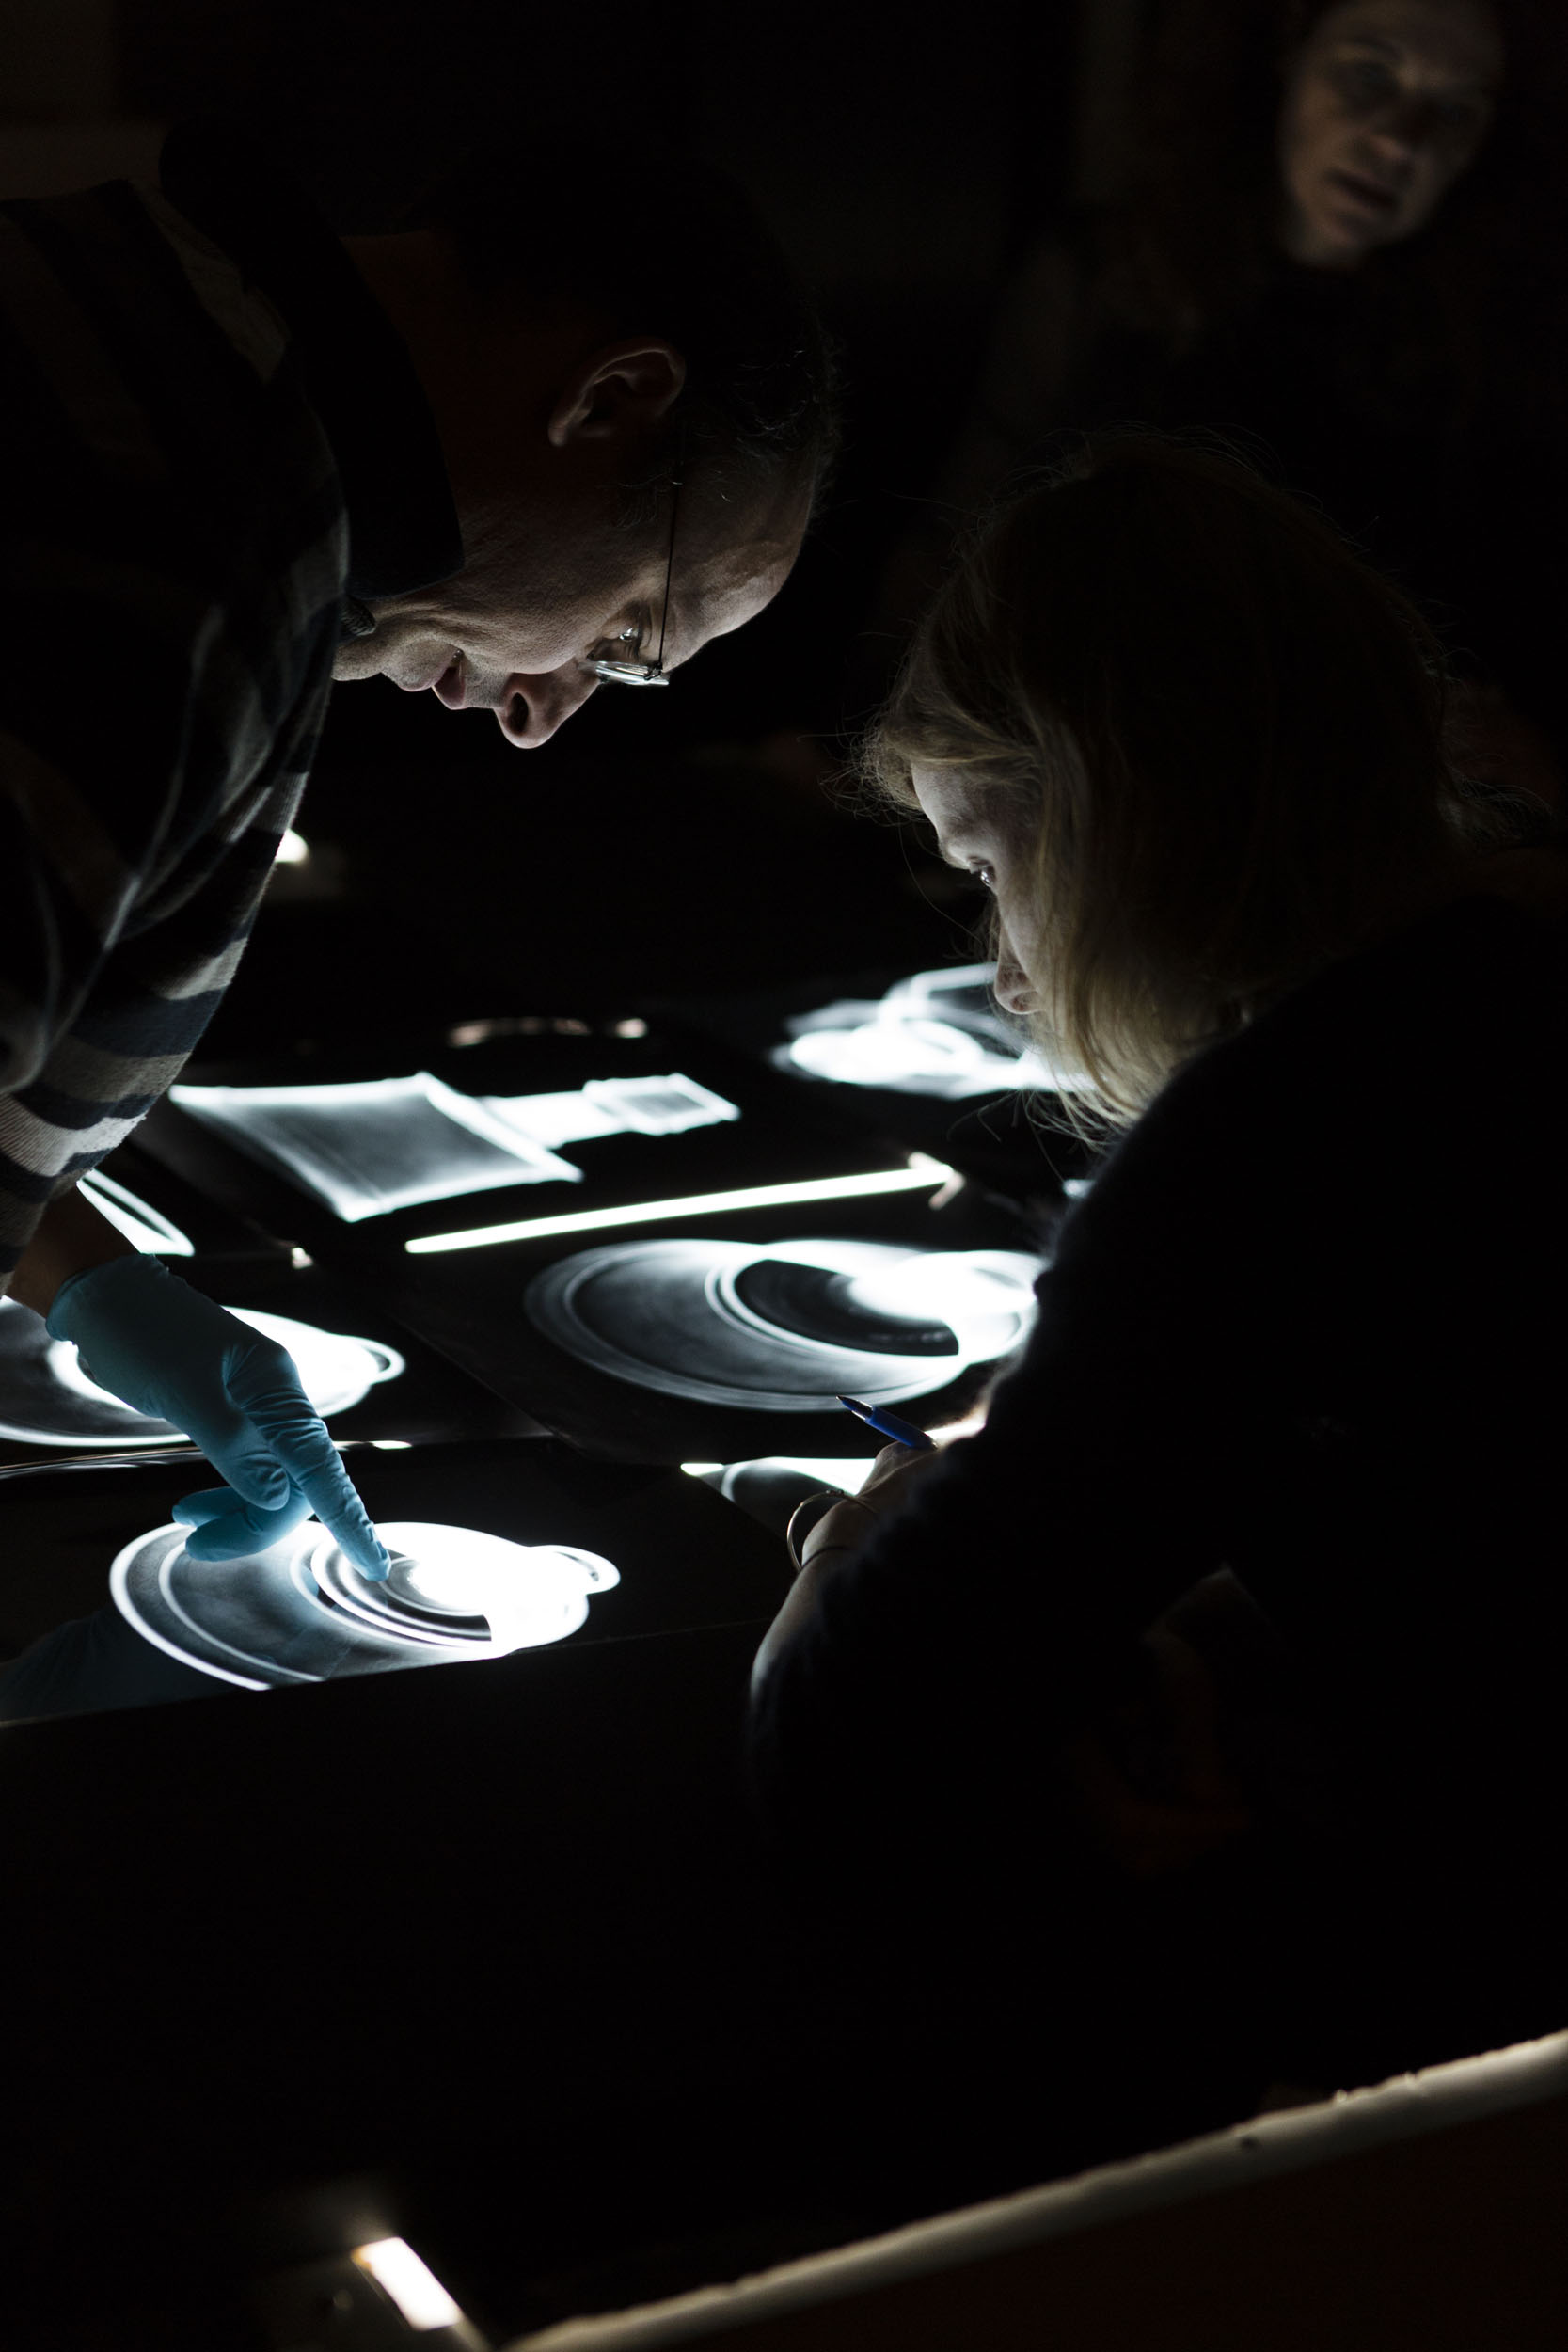 Un autre regard sur le reportage en entreprise.  Une femme et un homme analysent des radiographies d'objets d'art sur une table lumineuse. Reportage photographique commandé par le C2RMF, Centre de Recherche et de Restauration des Musées de France.